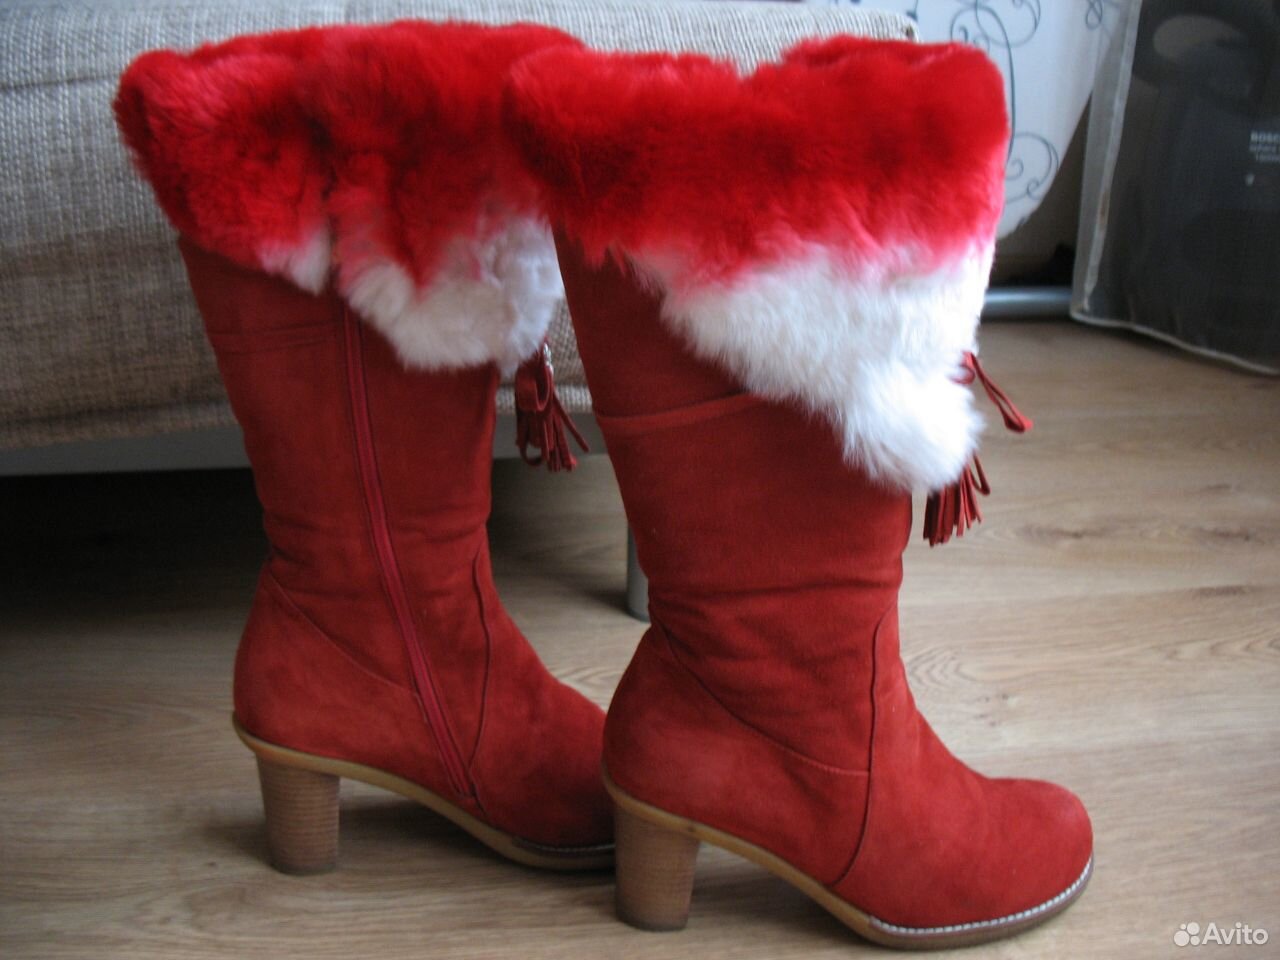 Купить сапоги красноярск. Красные зимние сапоги. Красные сапоги с мехом. Красные замшевые зимние ботинки. Красные зимние сапоги женские.